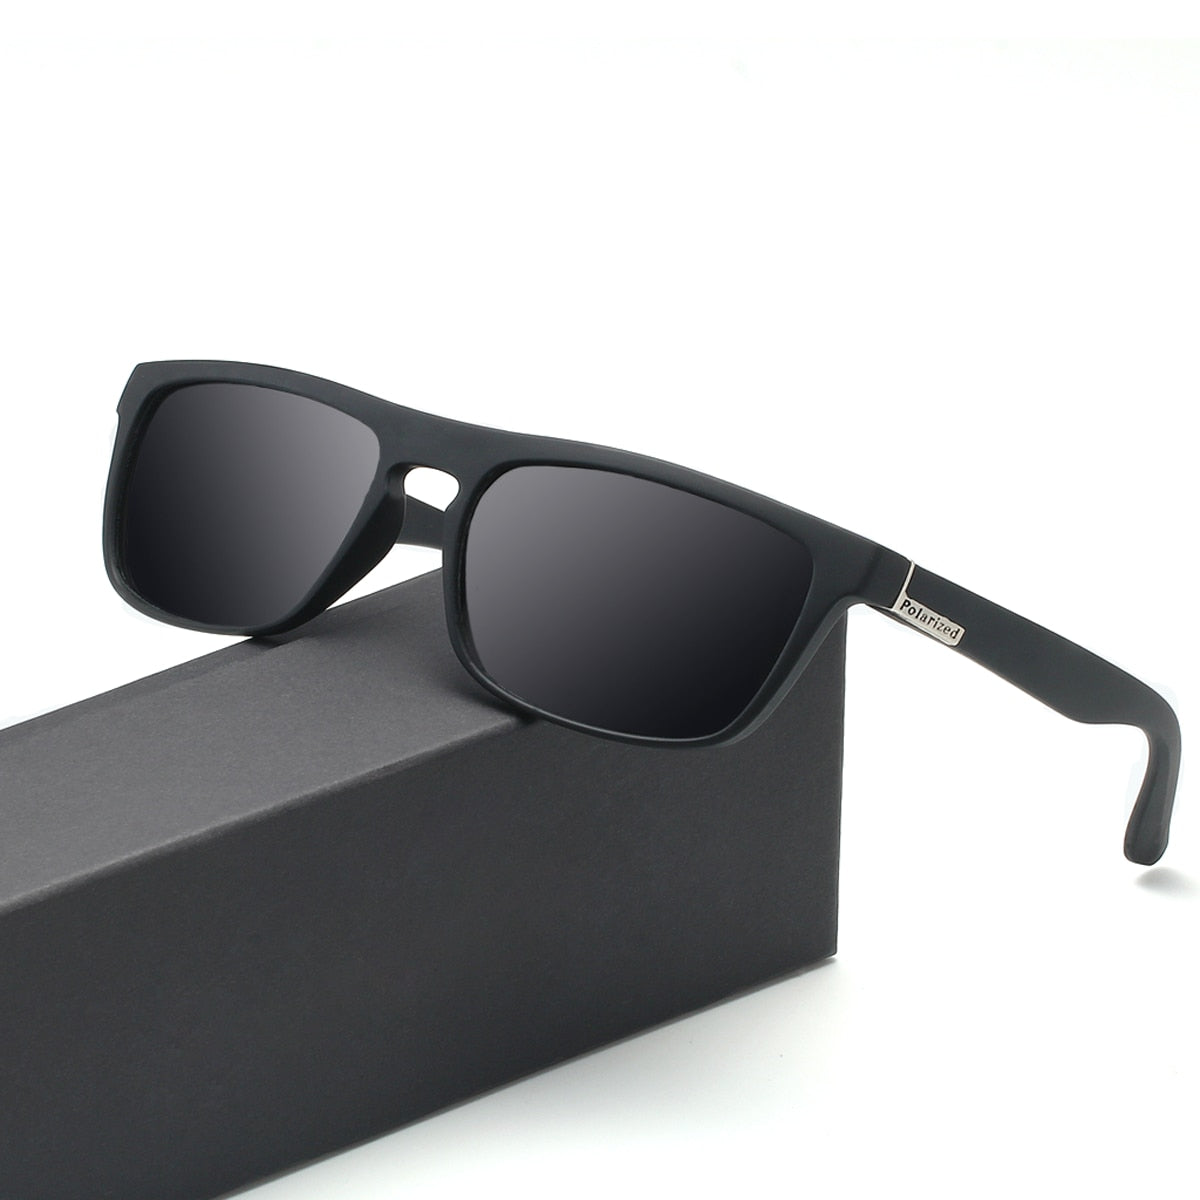 mirror polarized classic design square sunglasses